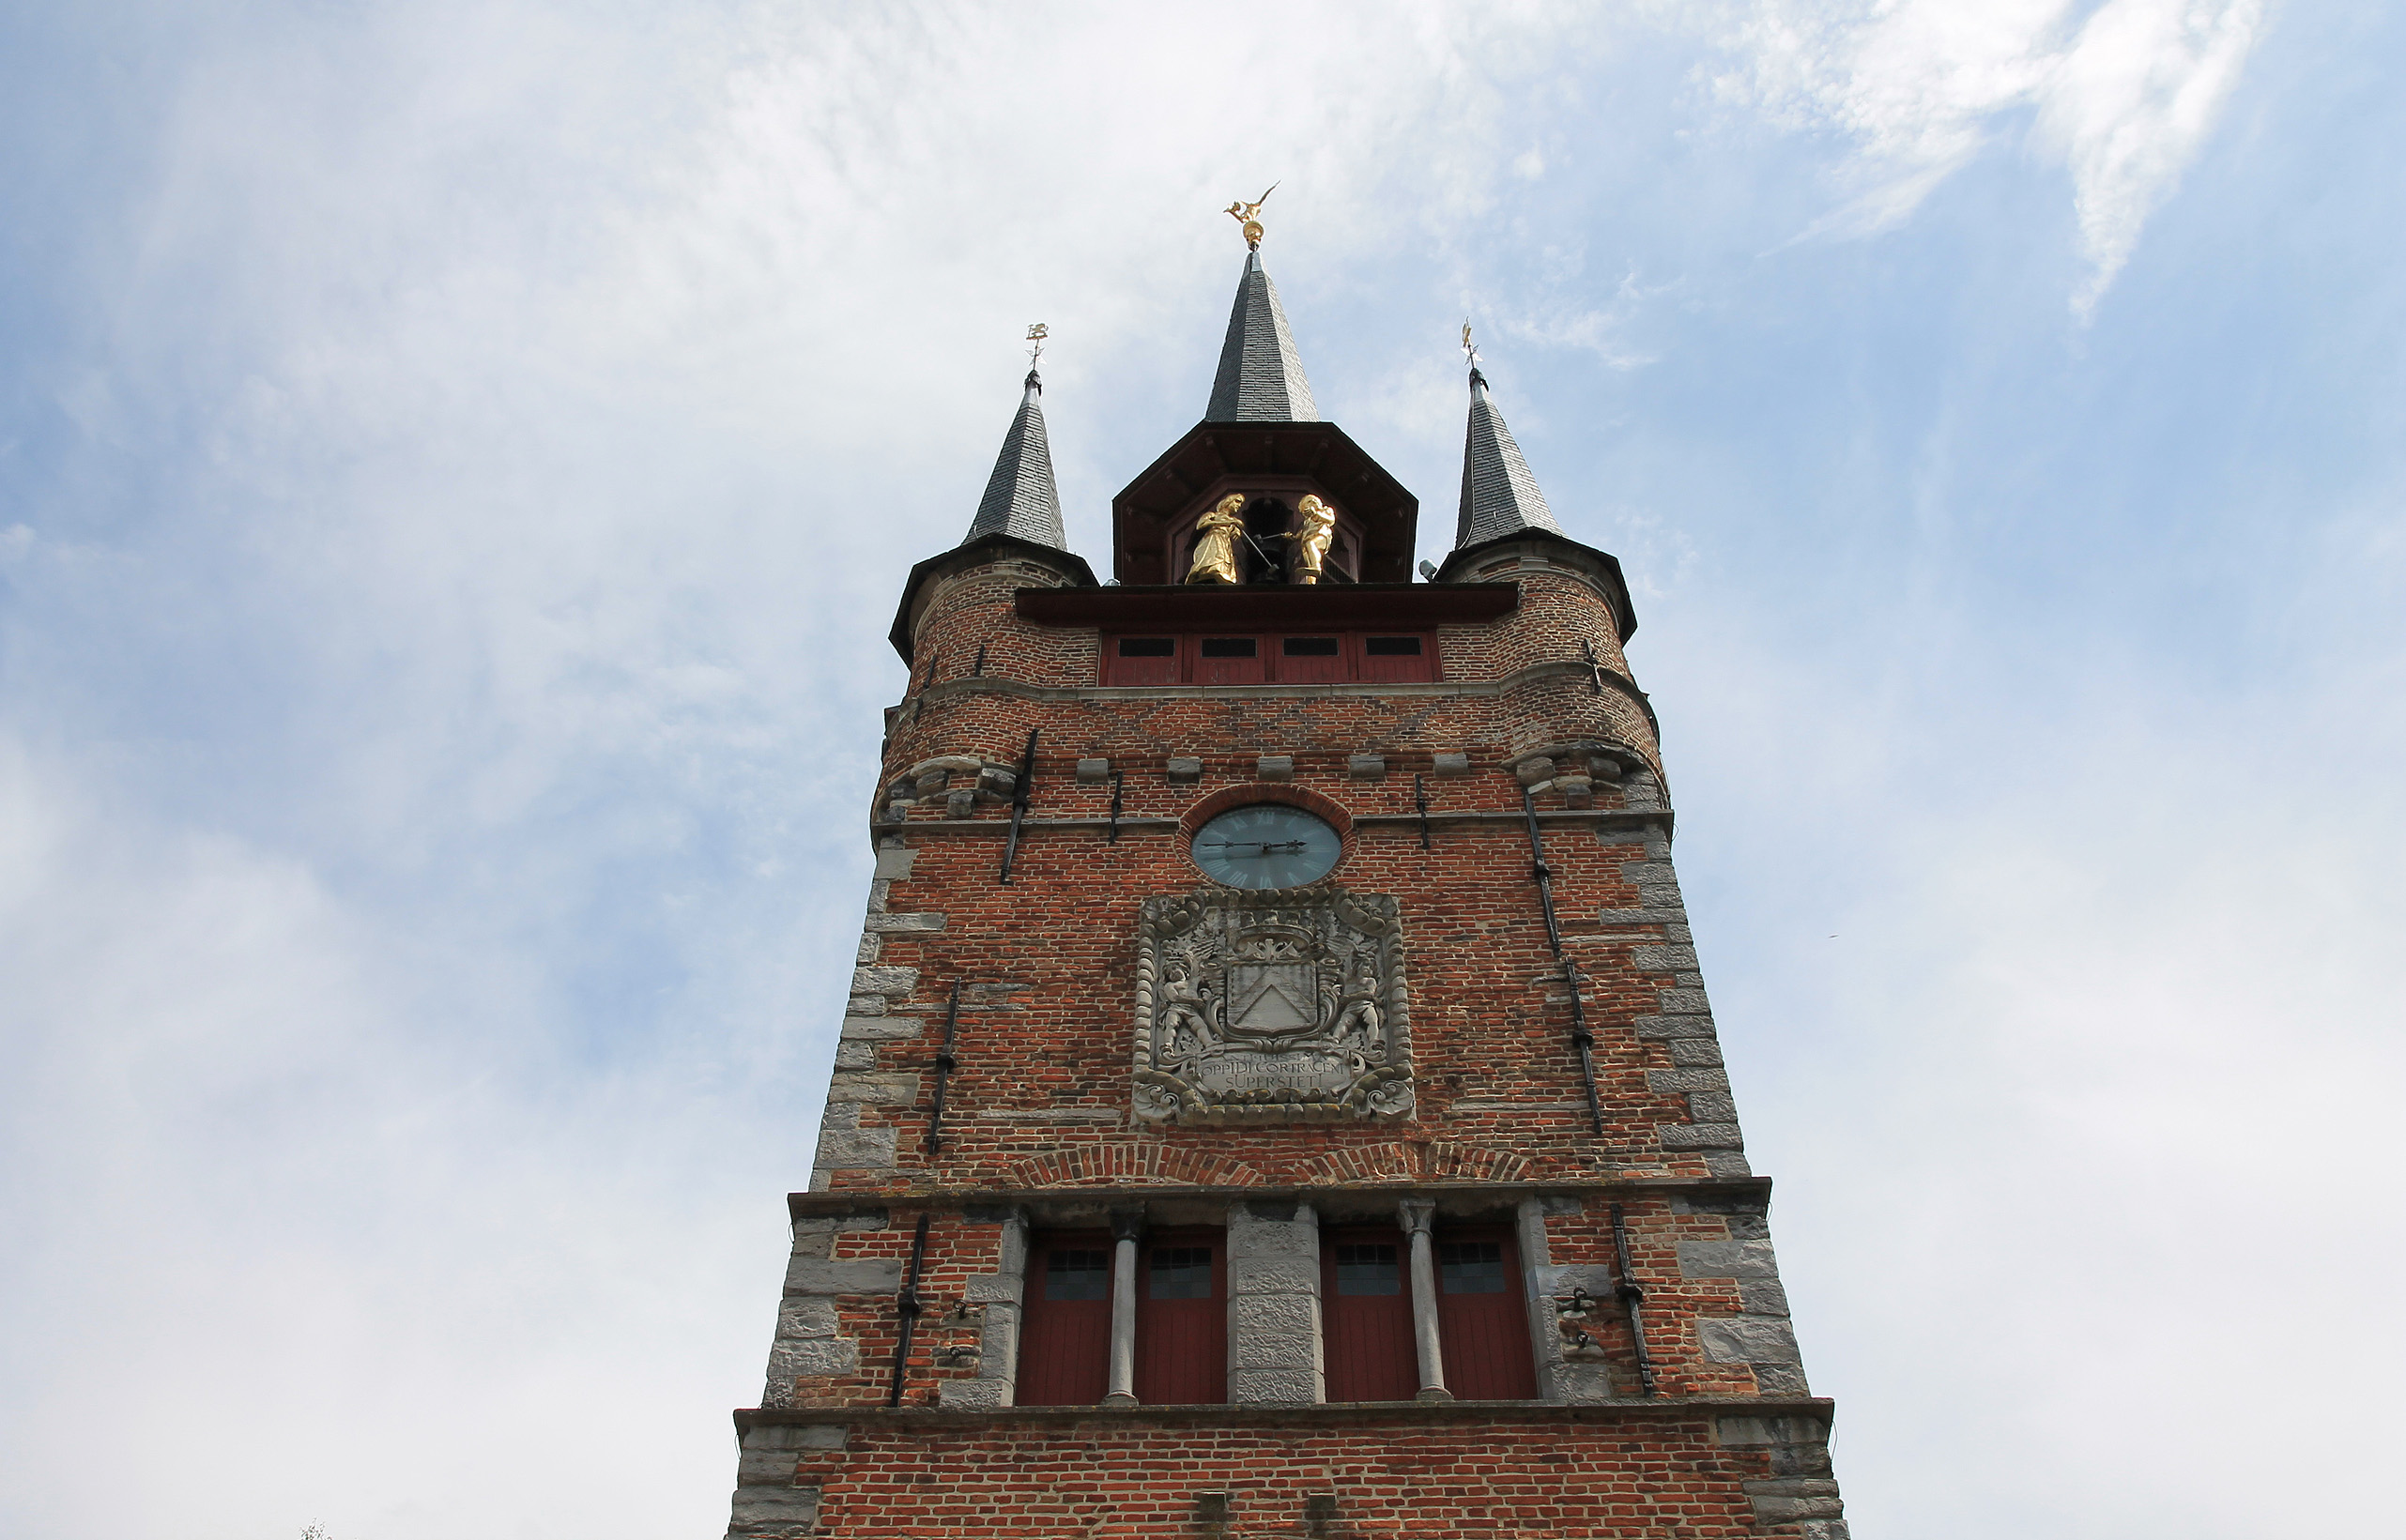 Top of the belfry of Kortrijk.